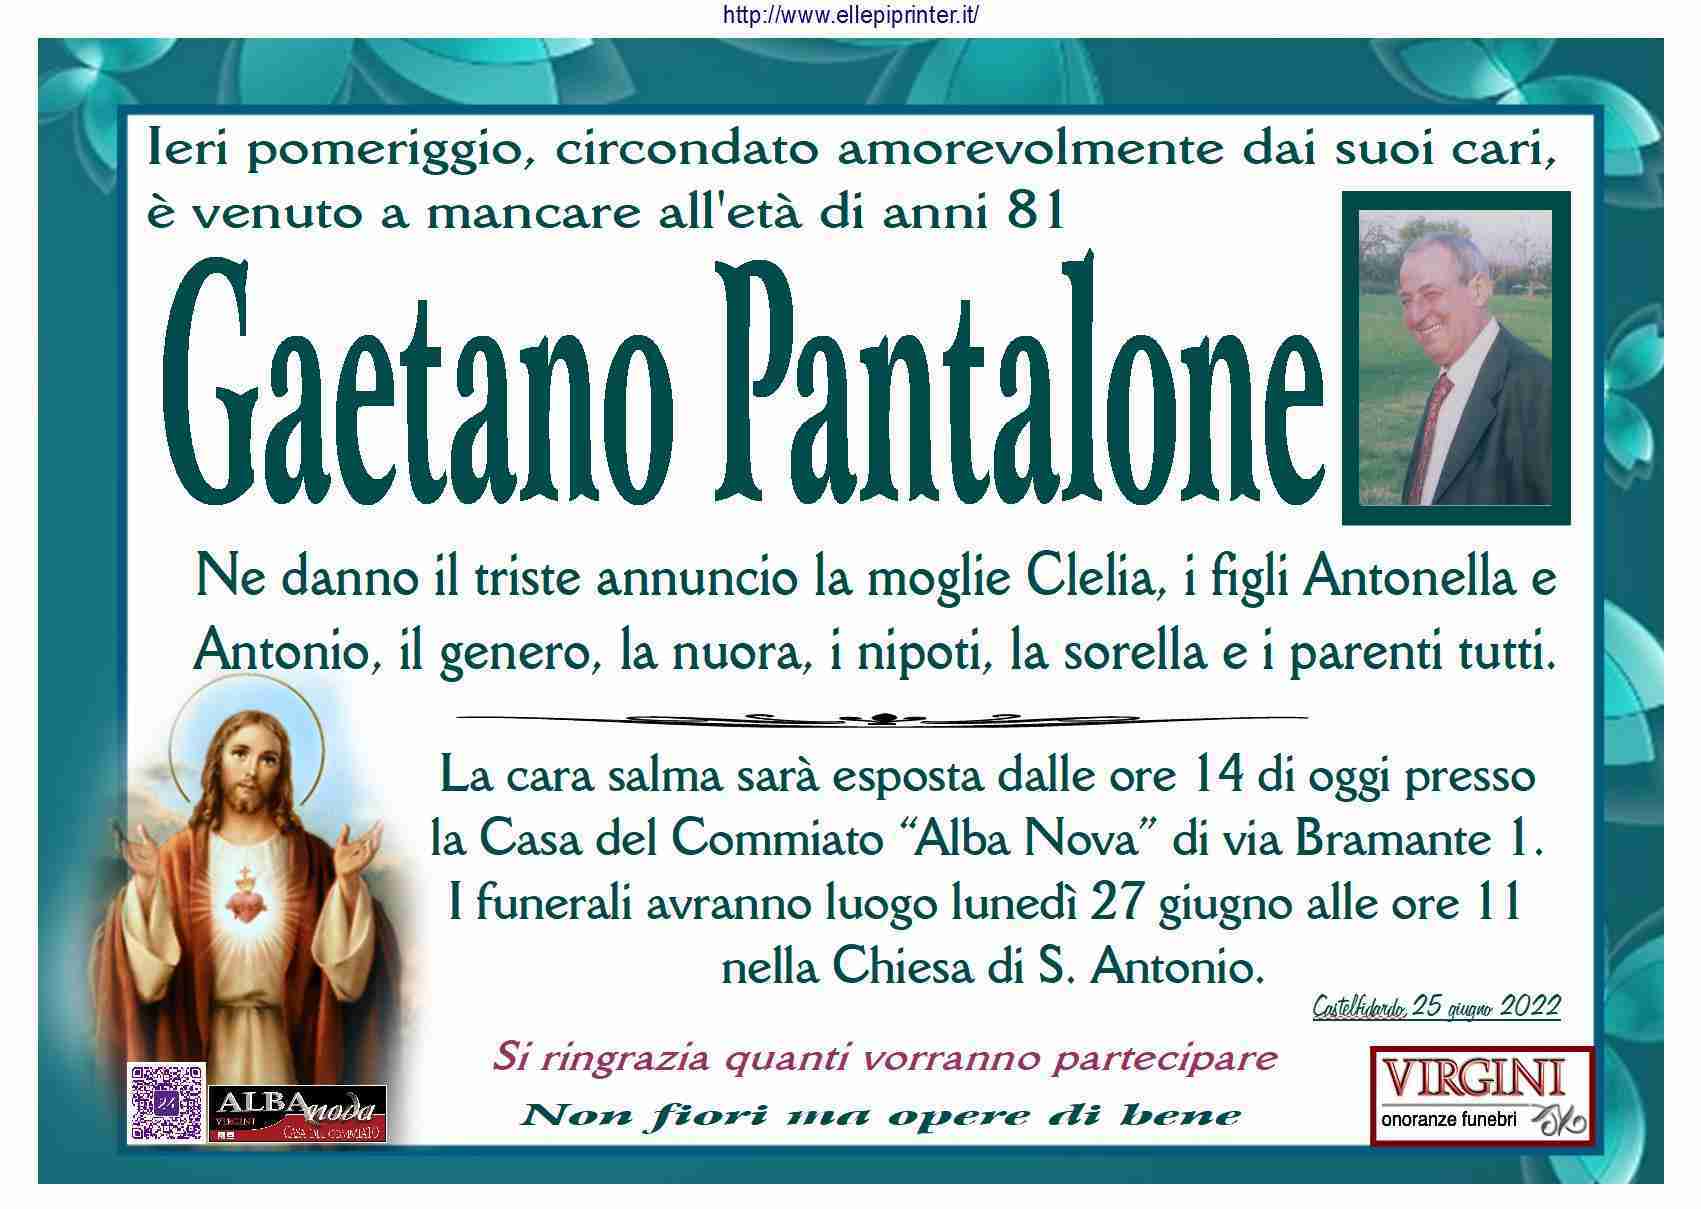 Gaetano Pantalone